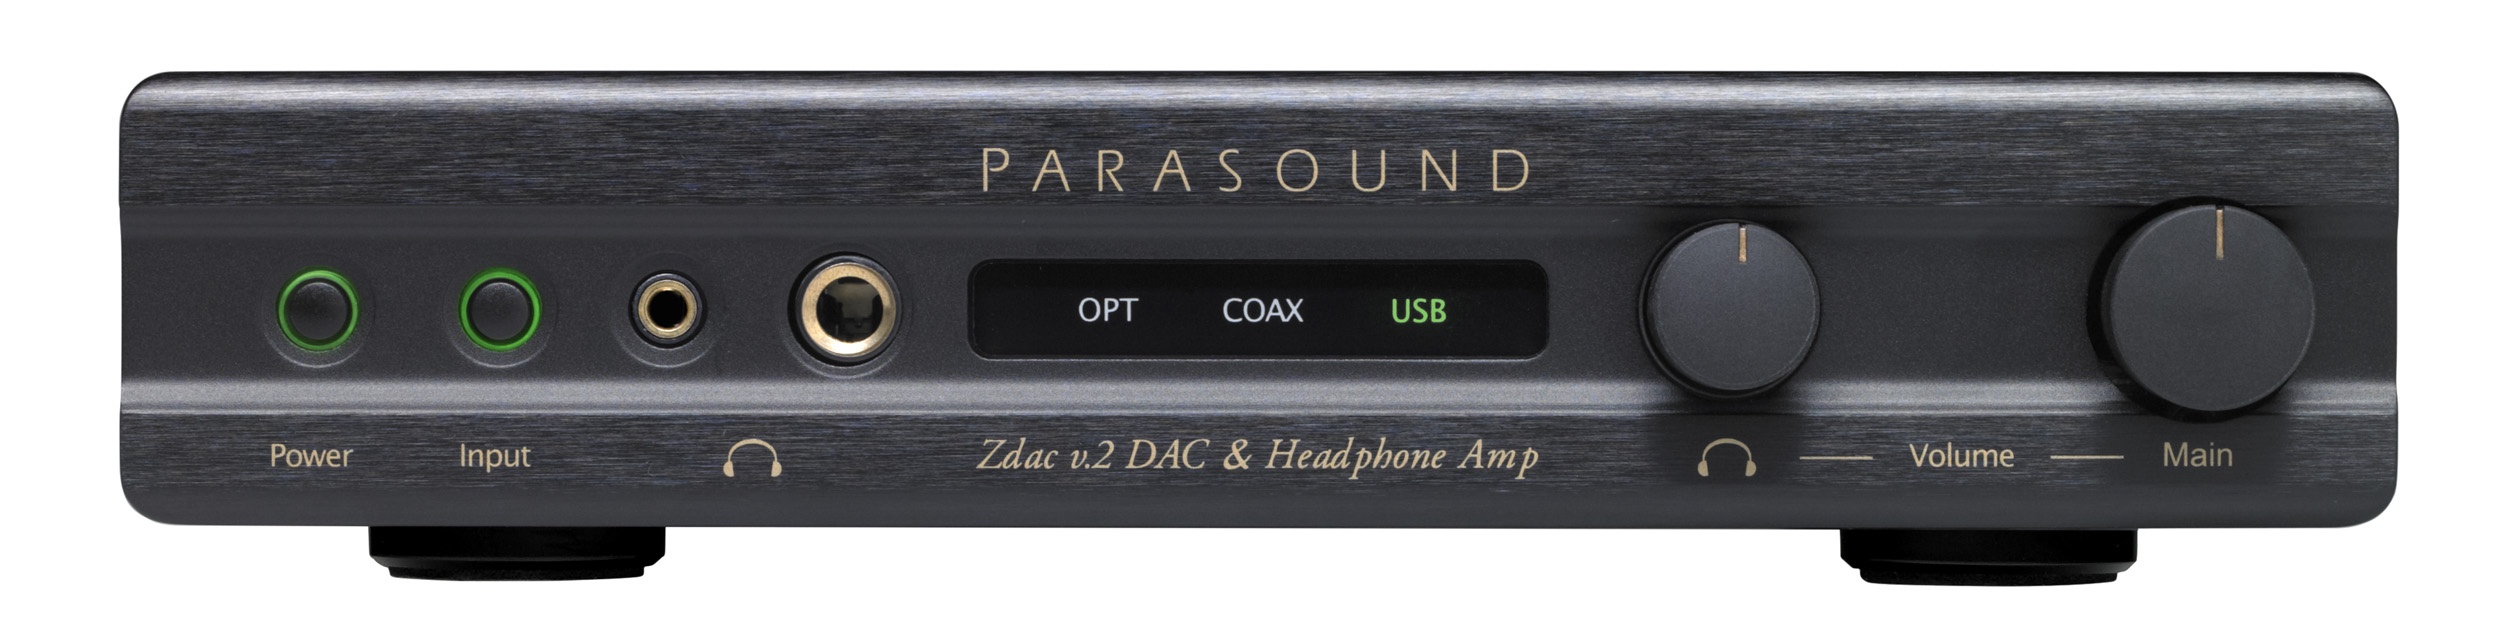 Parasound Zdac v2 black